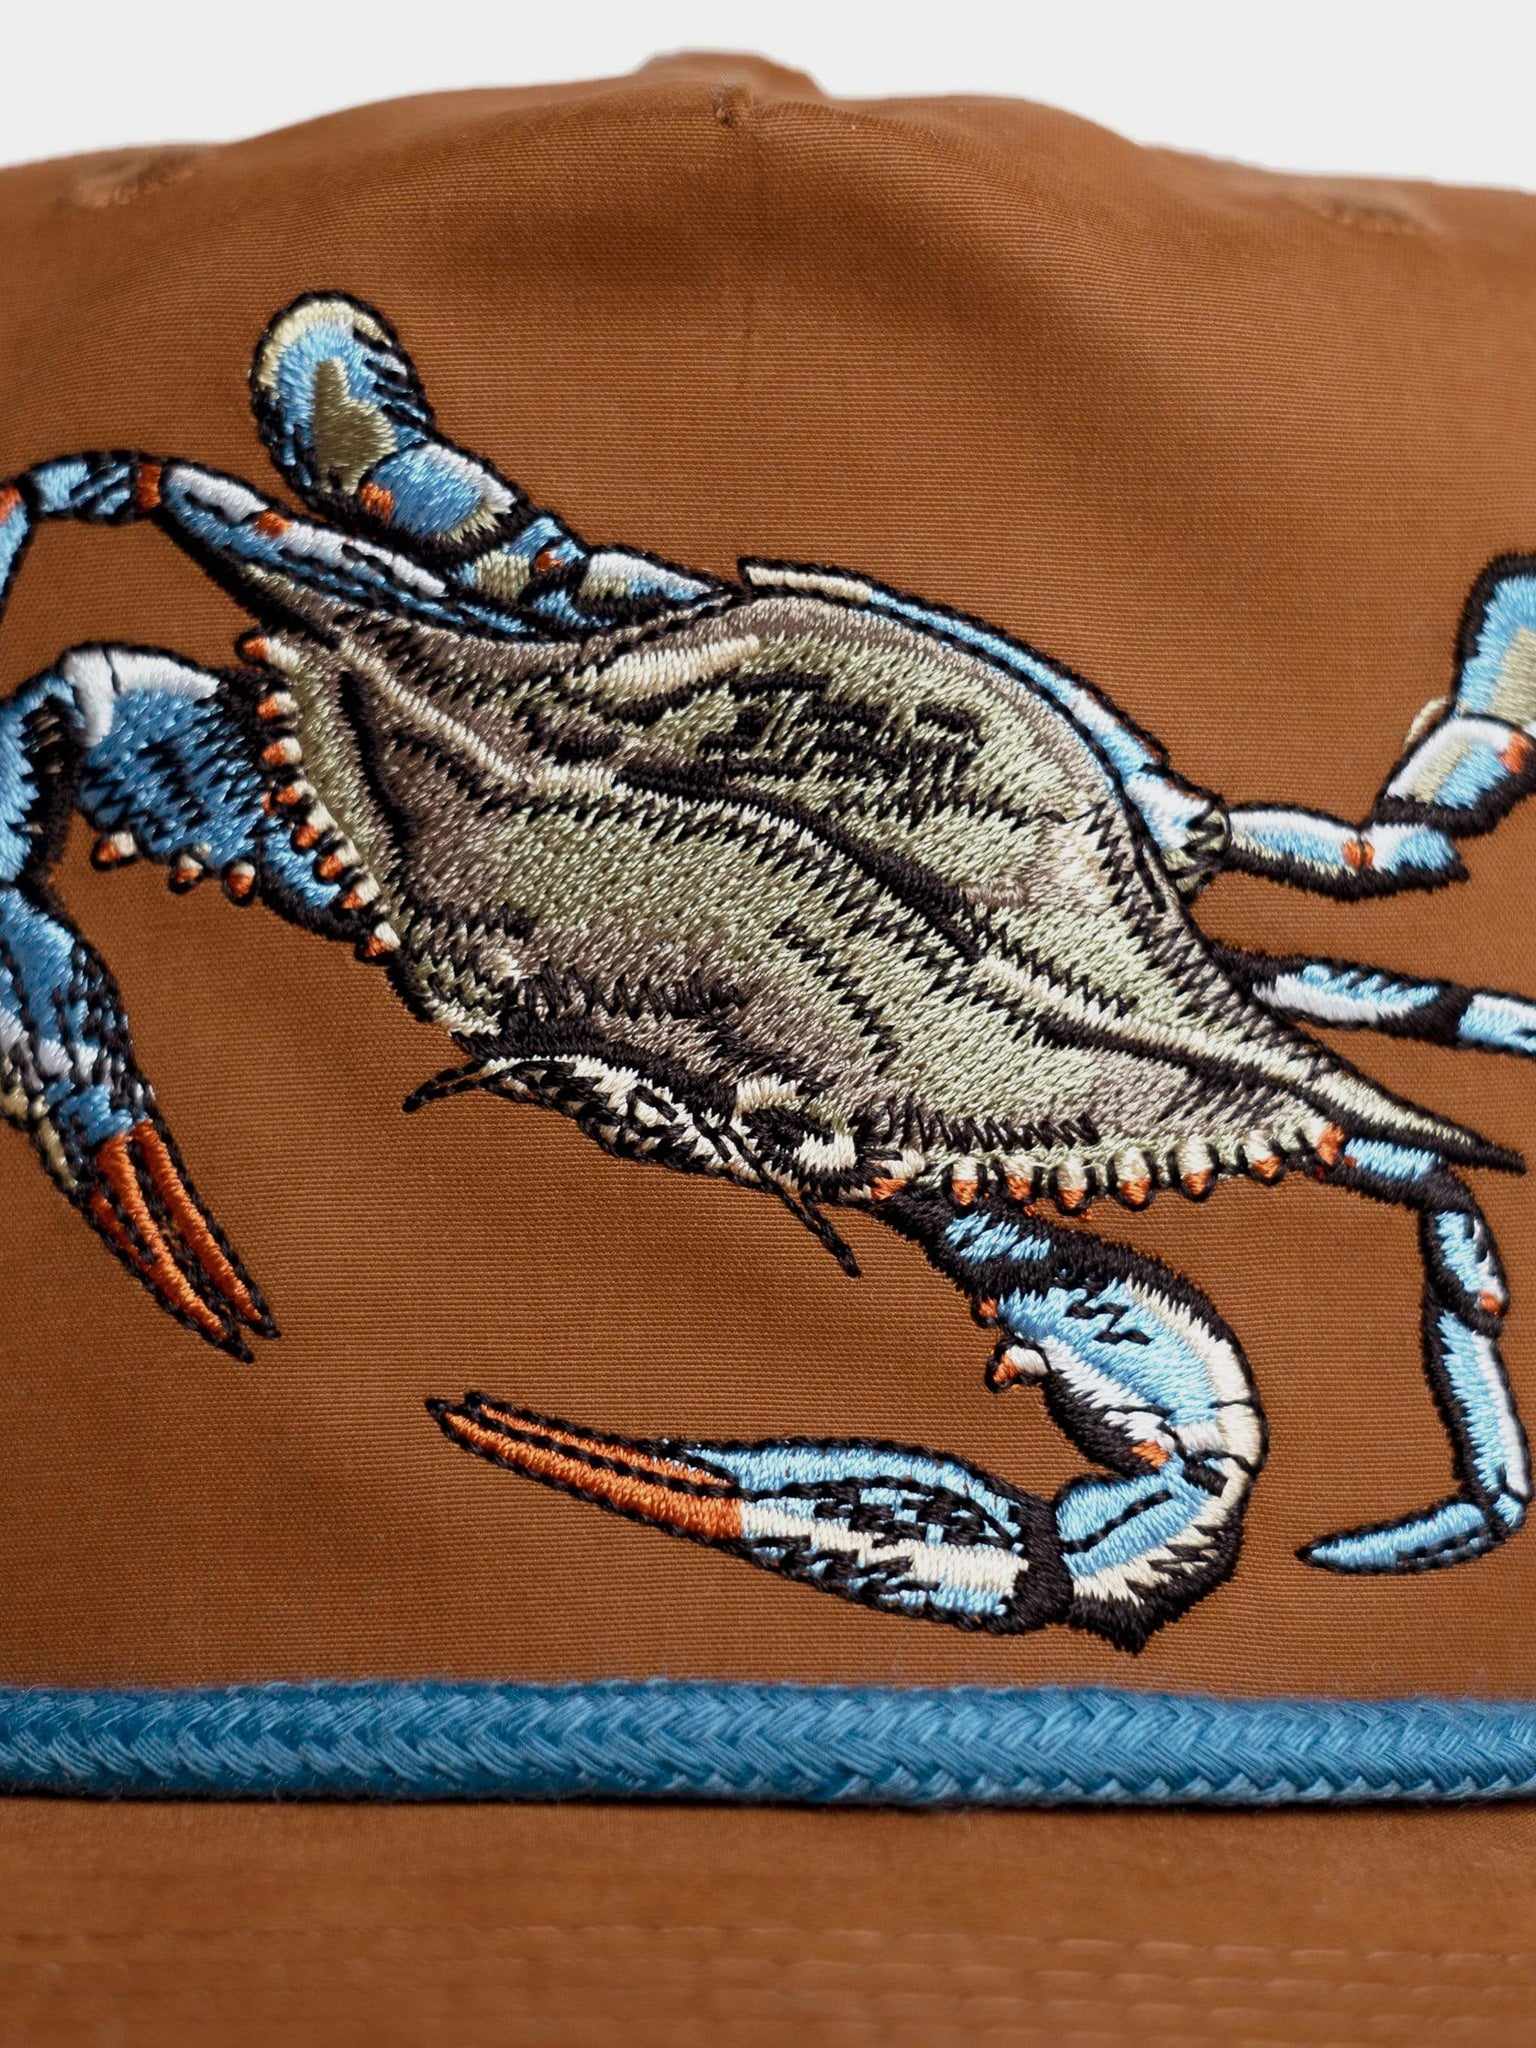 Blue Crab Hat - Pintail Brown